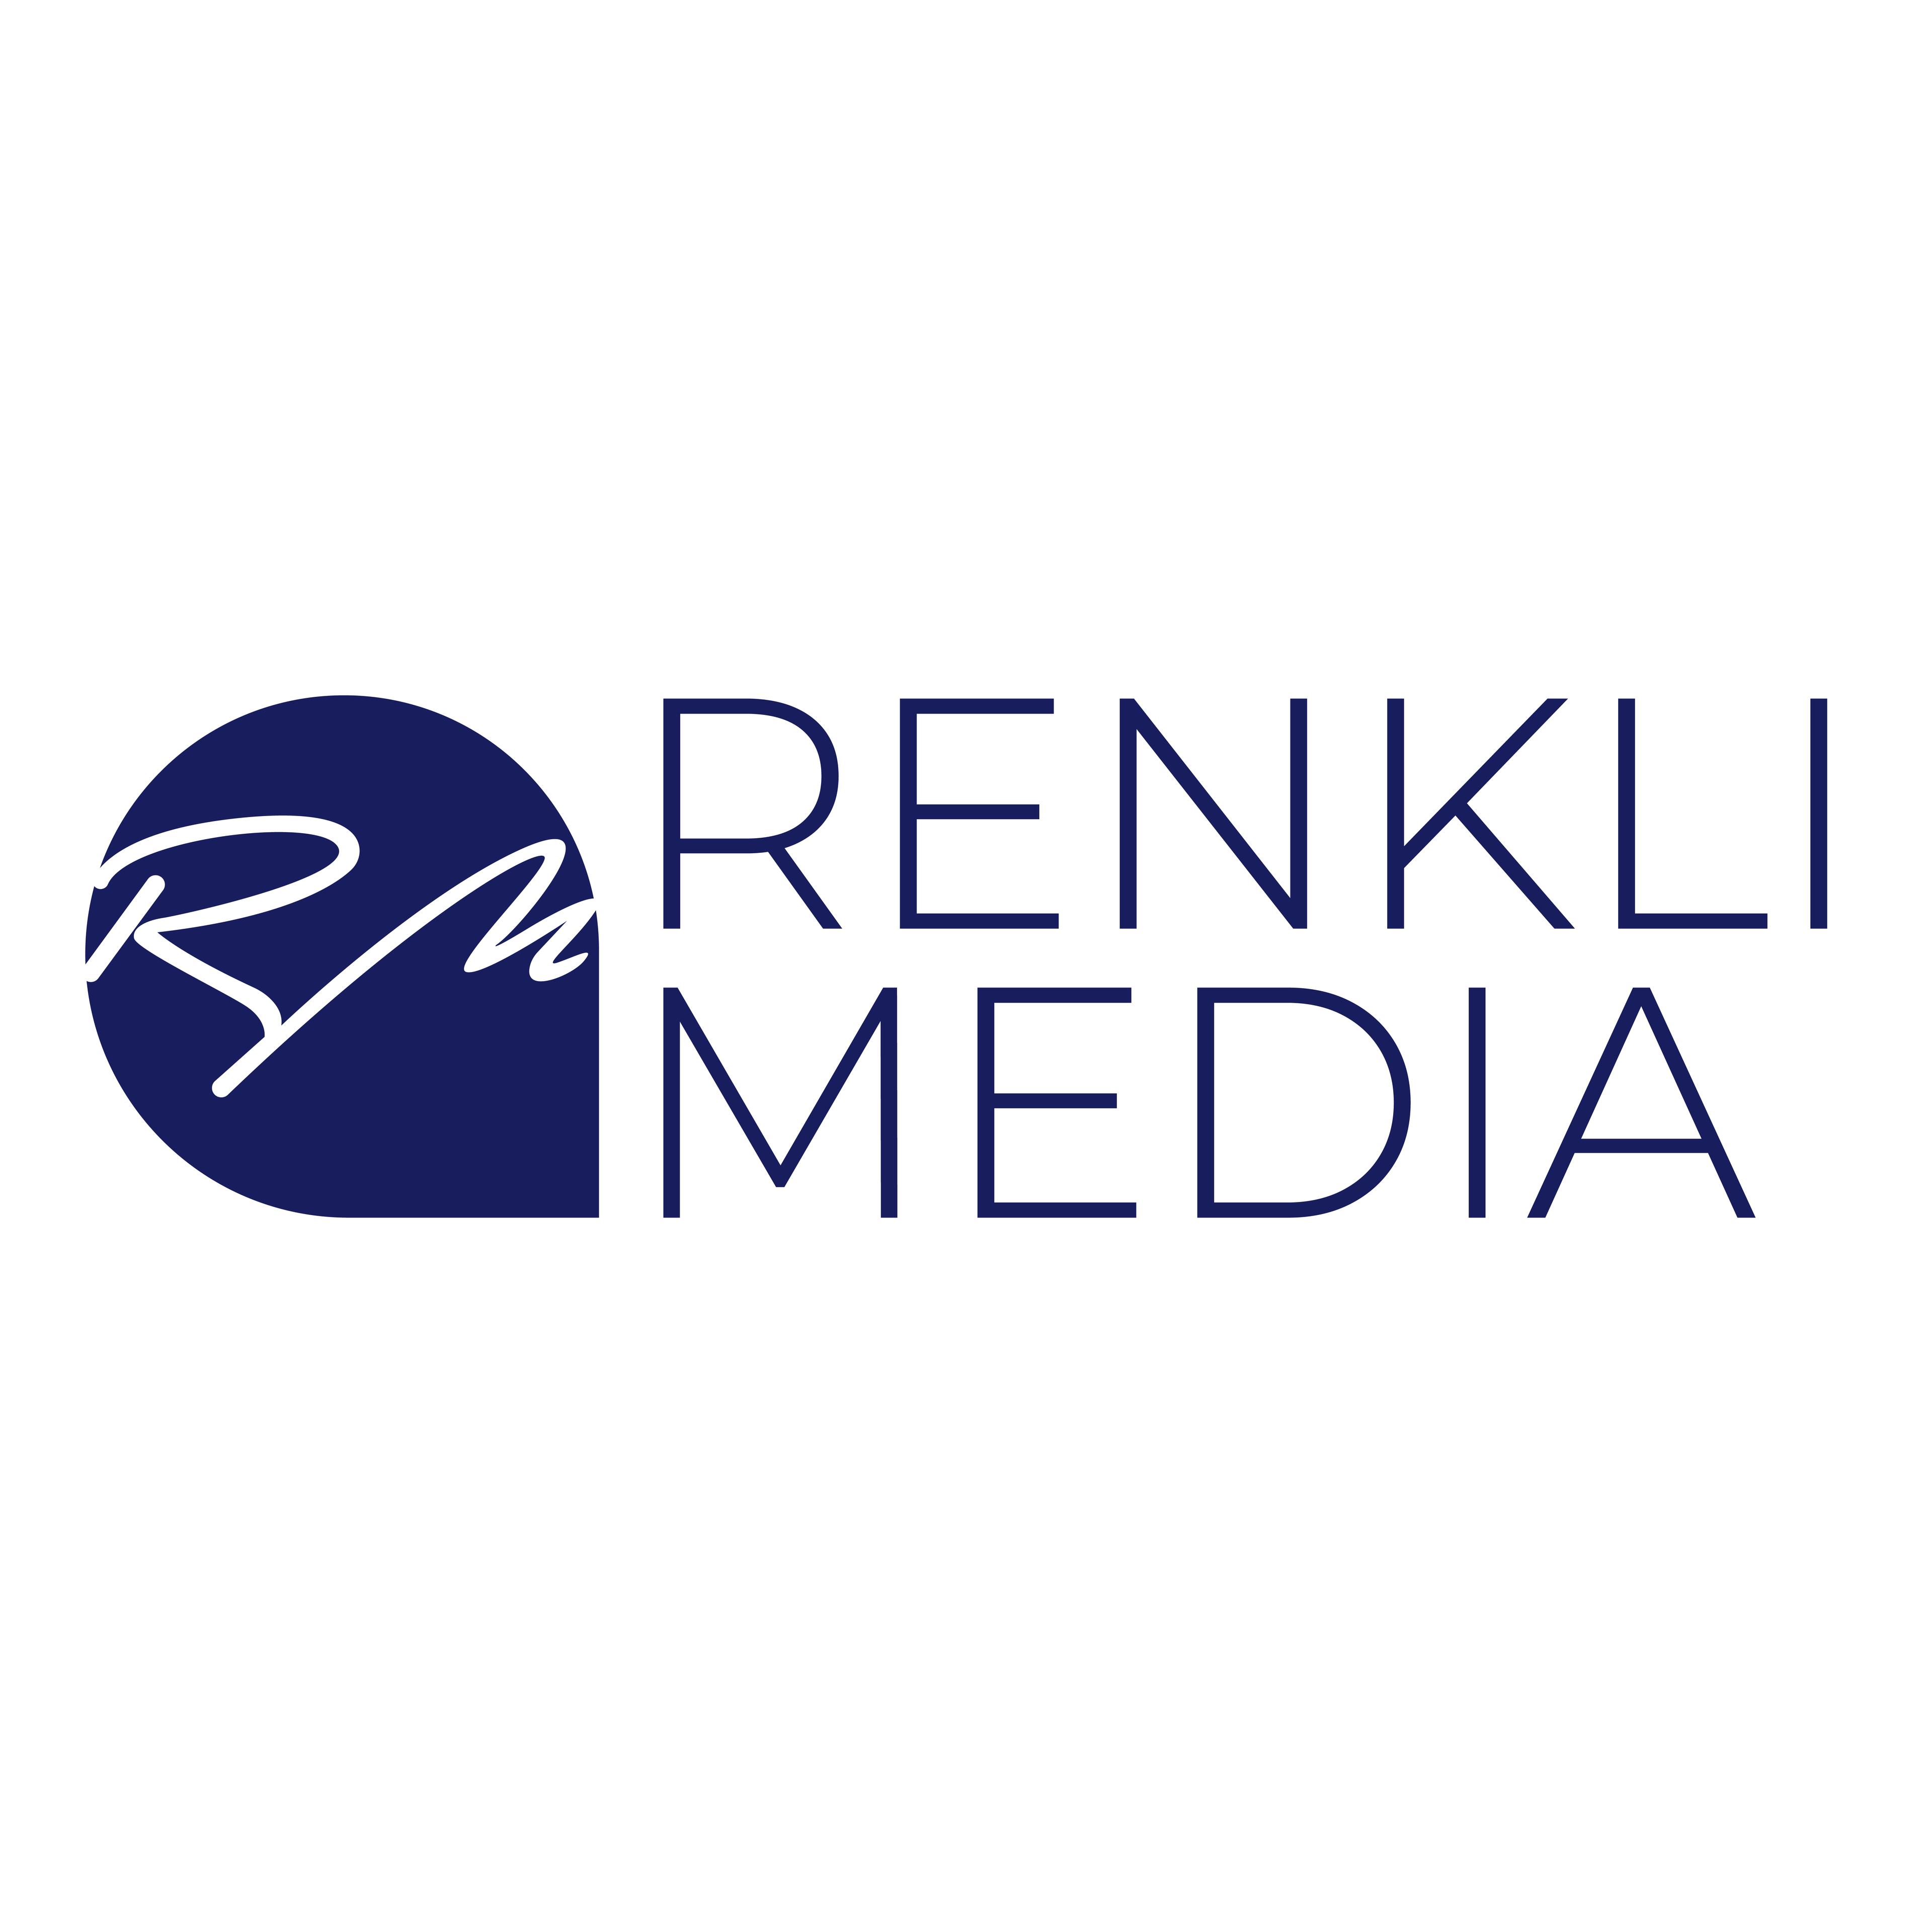 RENKLI MEDIA | Agentur für Online Marketing & Branding cover